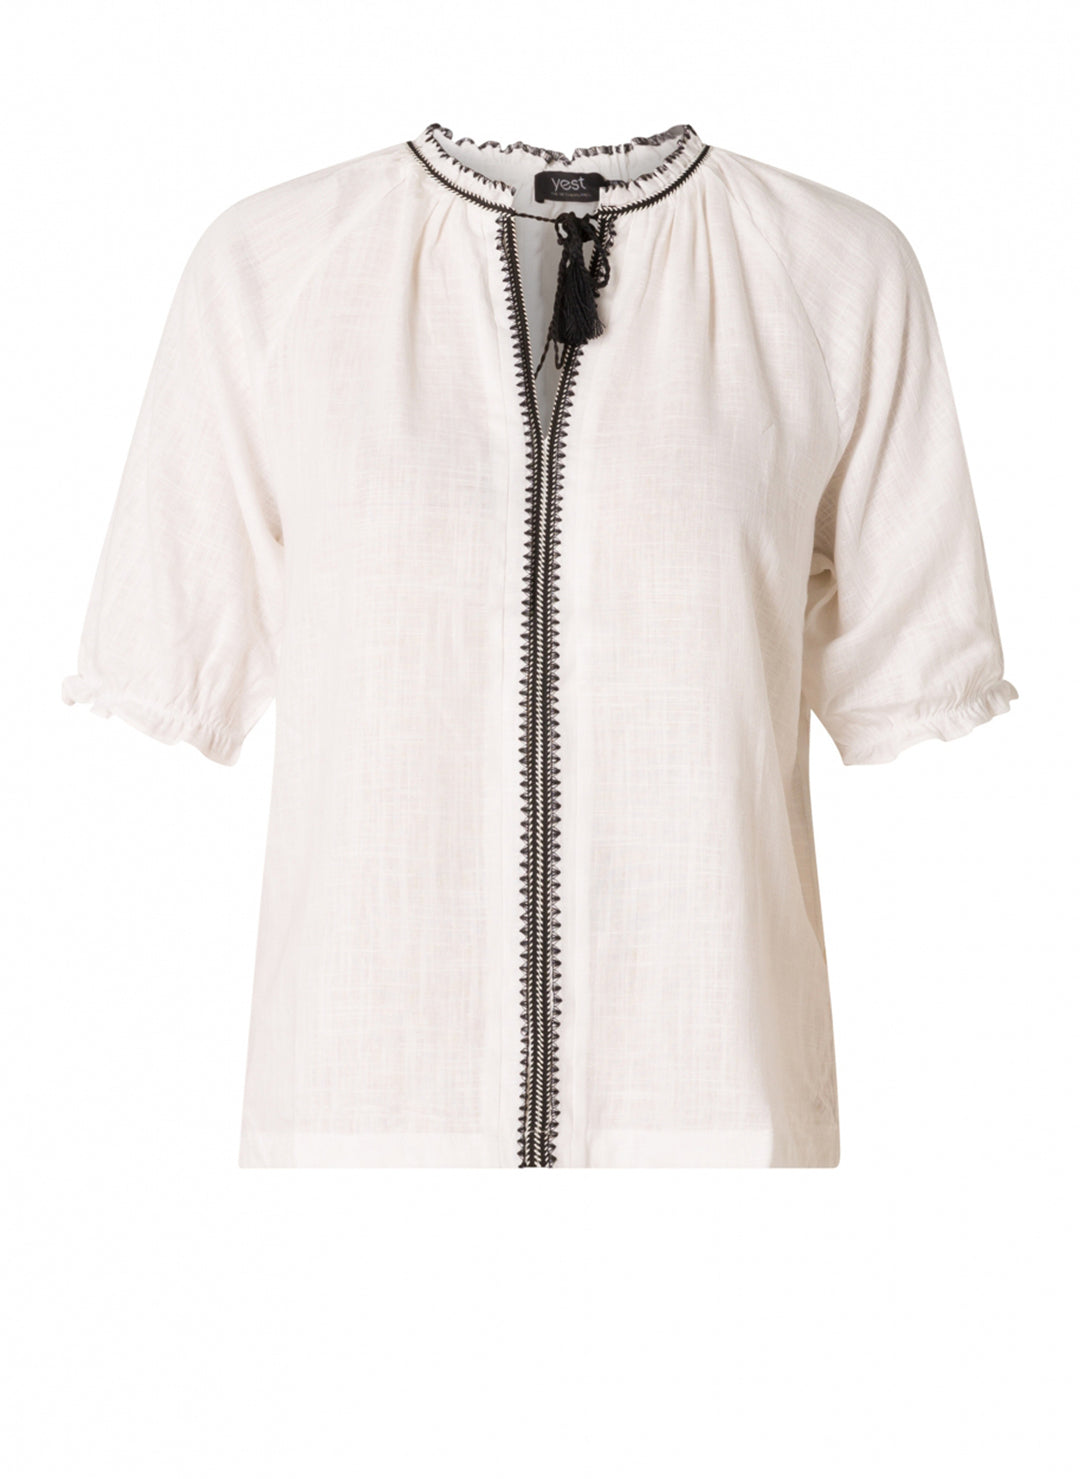 witte blouse met zwarte bies - yesta - - grote maten - dameskleding - kledingwinkel - herent - leuven